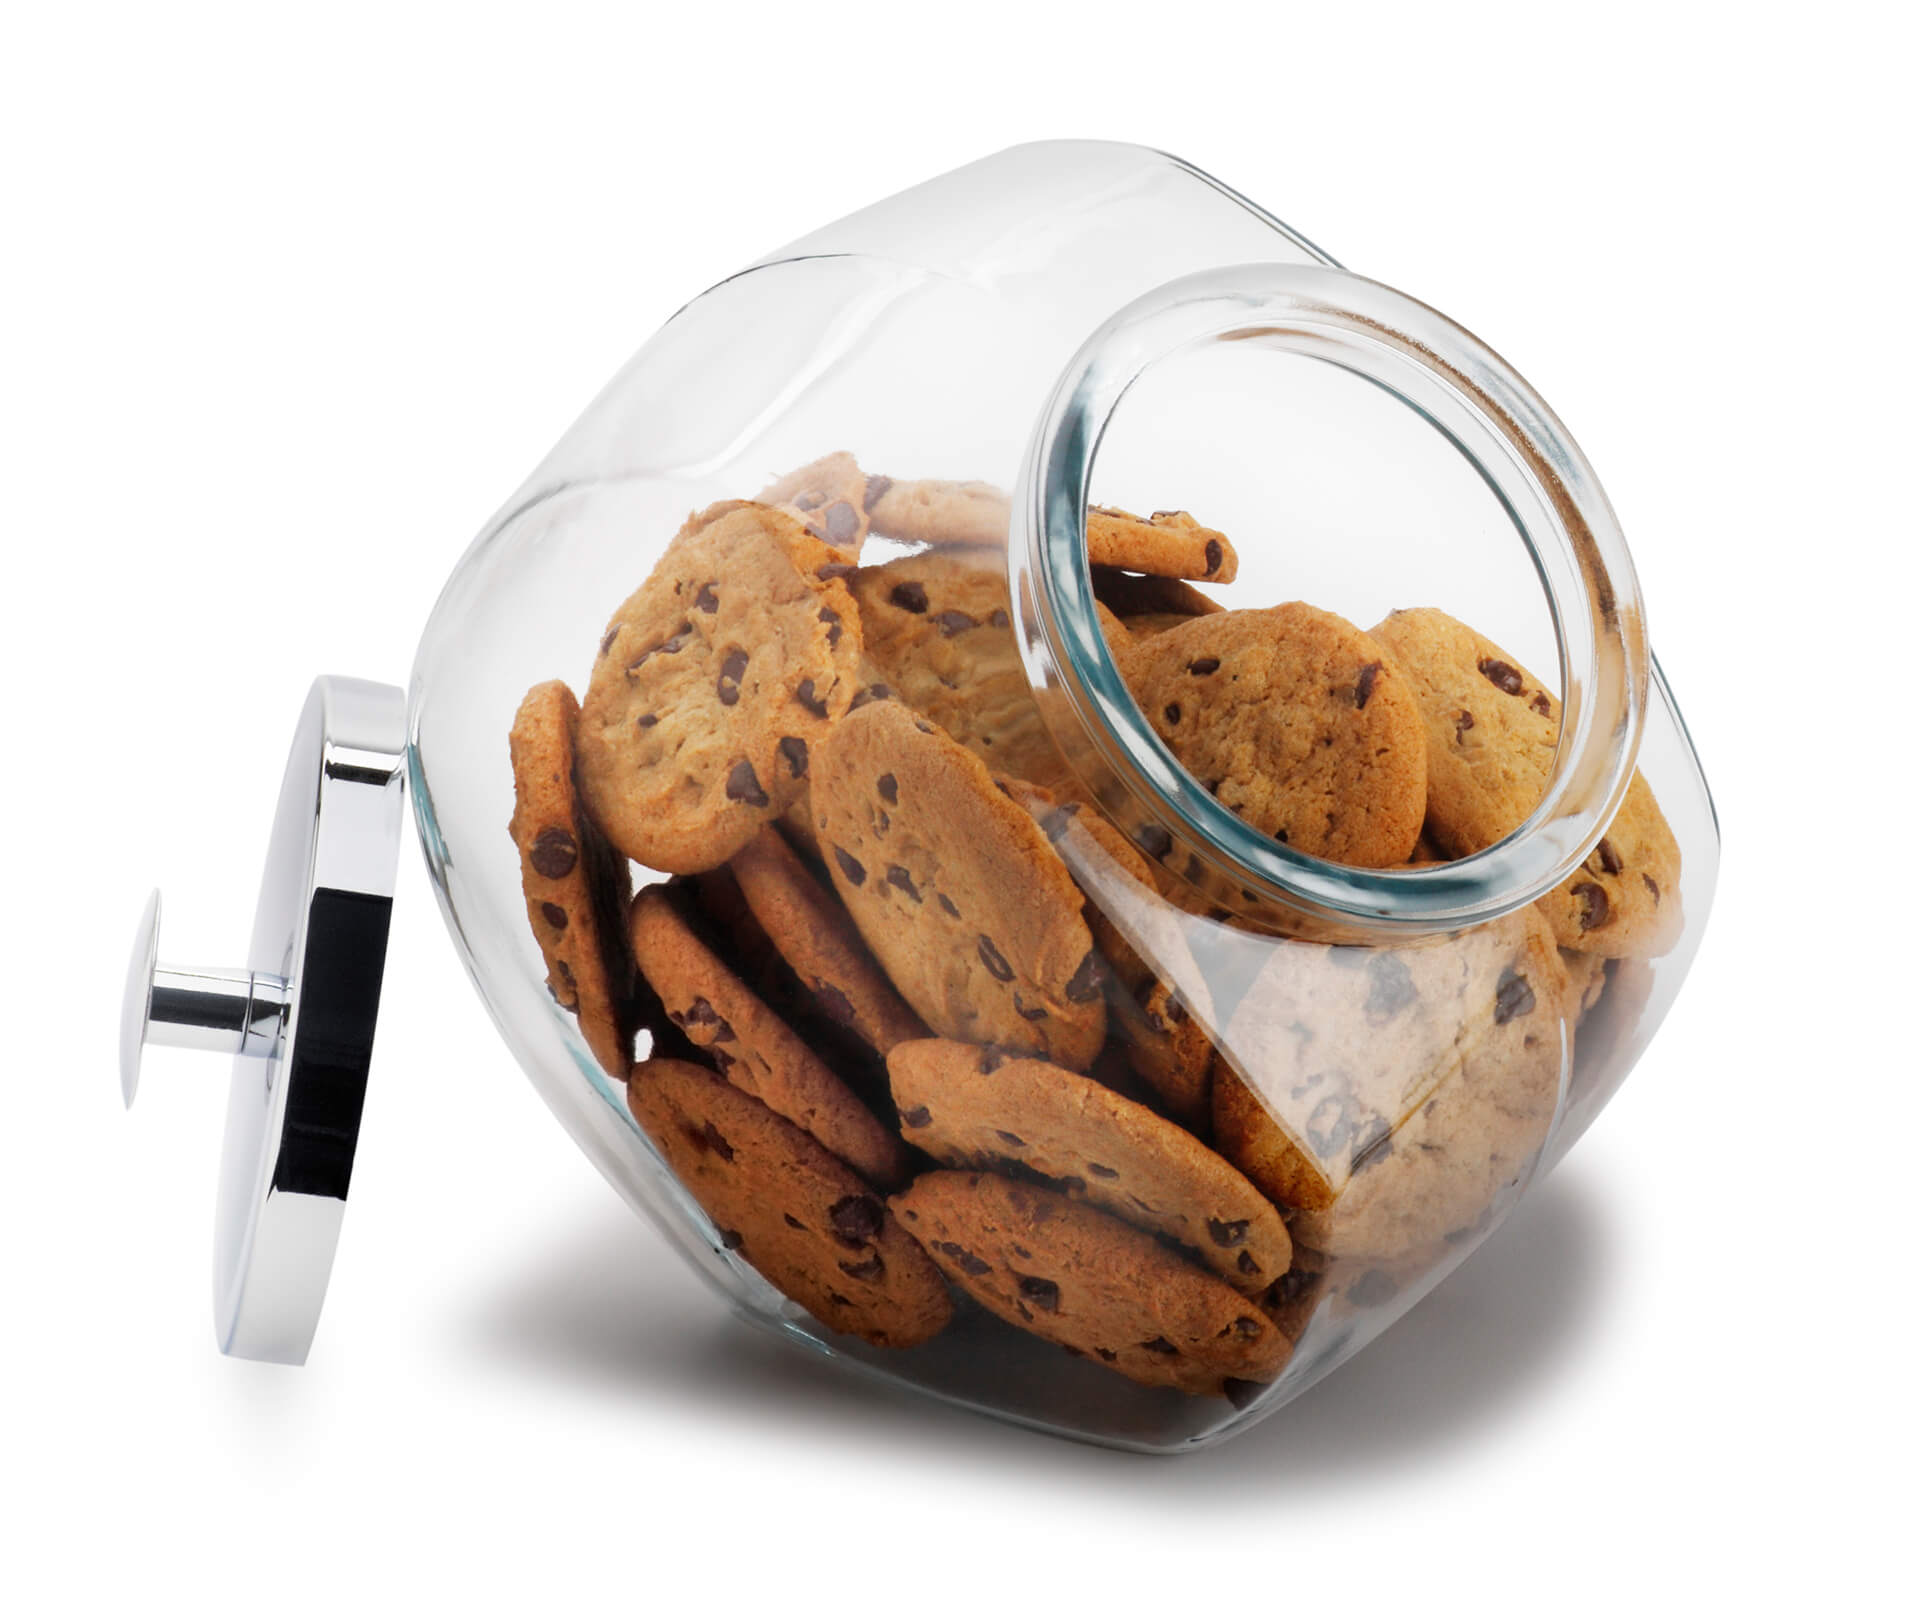 Jar of cookies